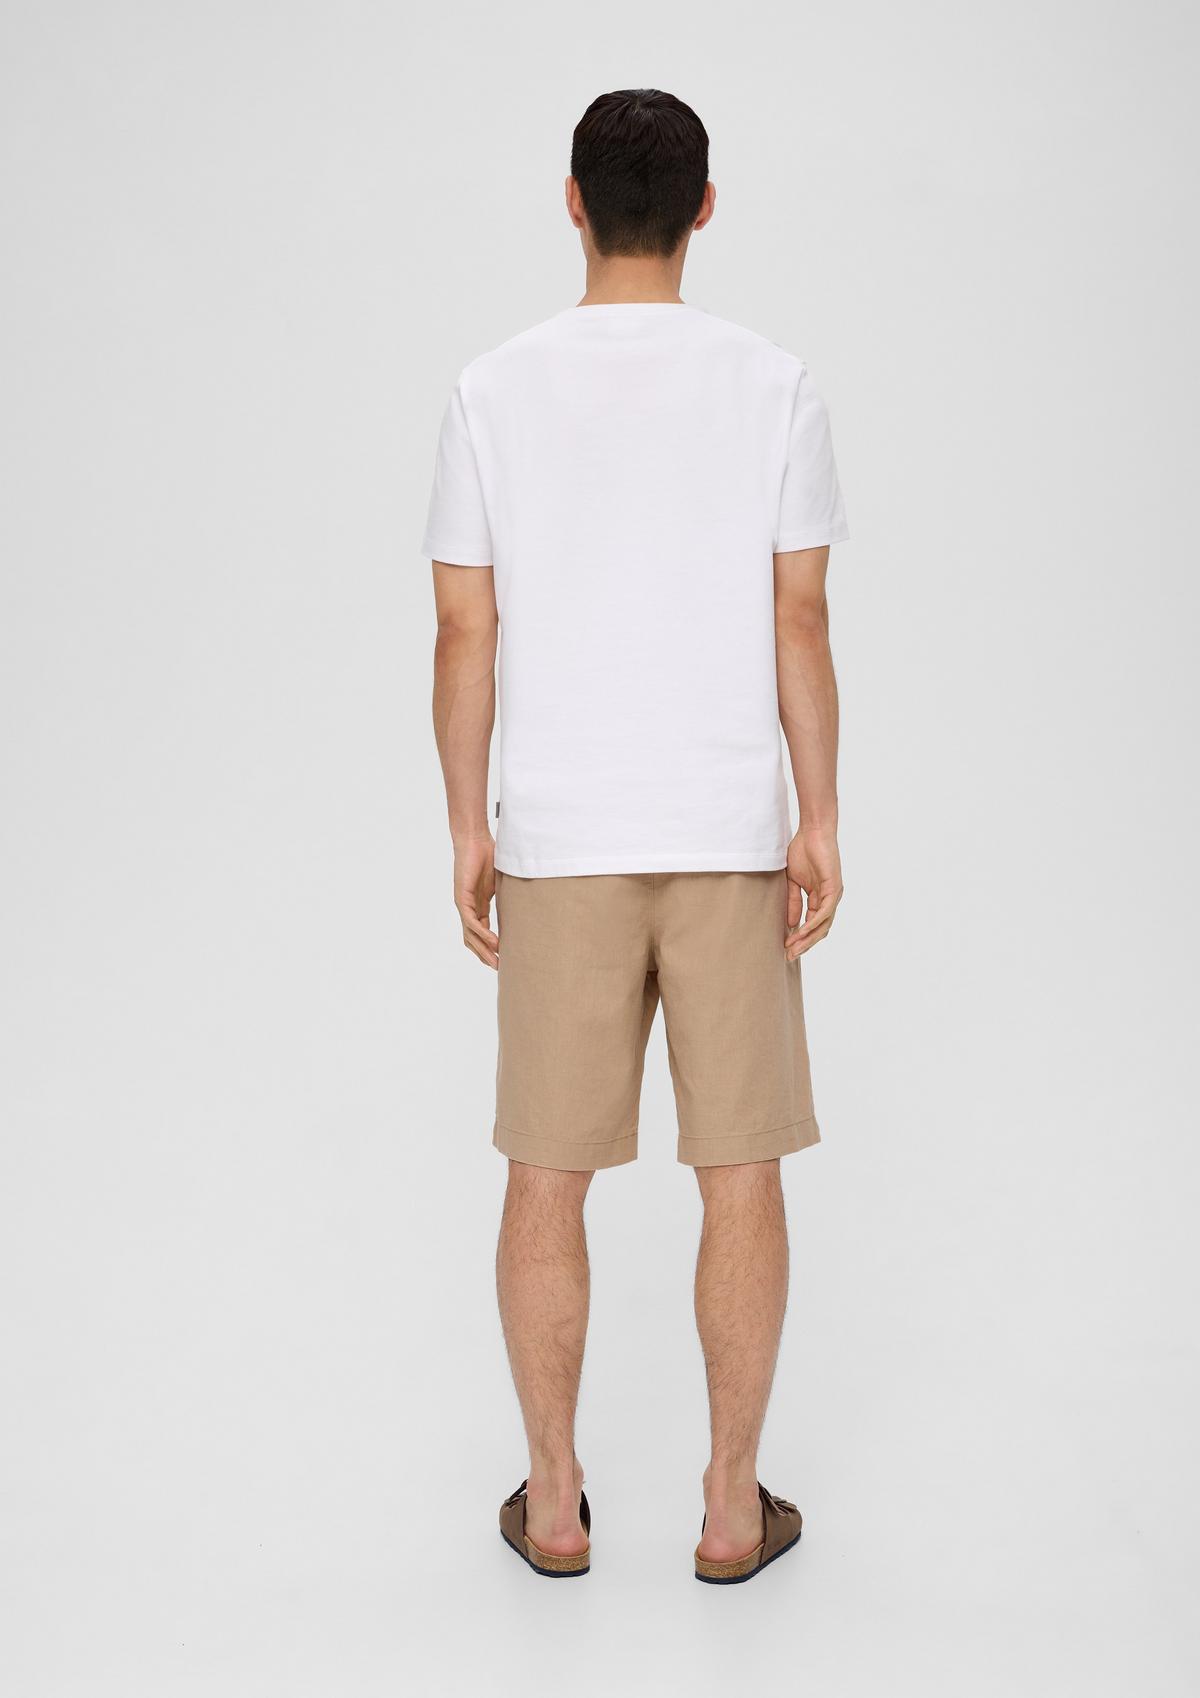 Bermuda shorts in - linen blended white